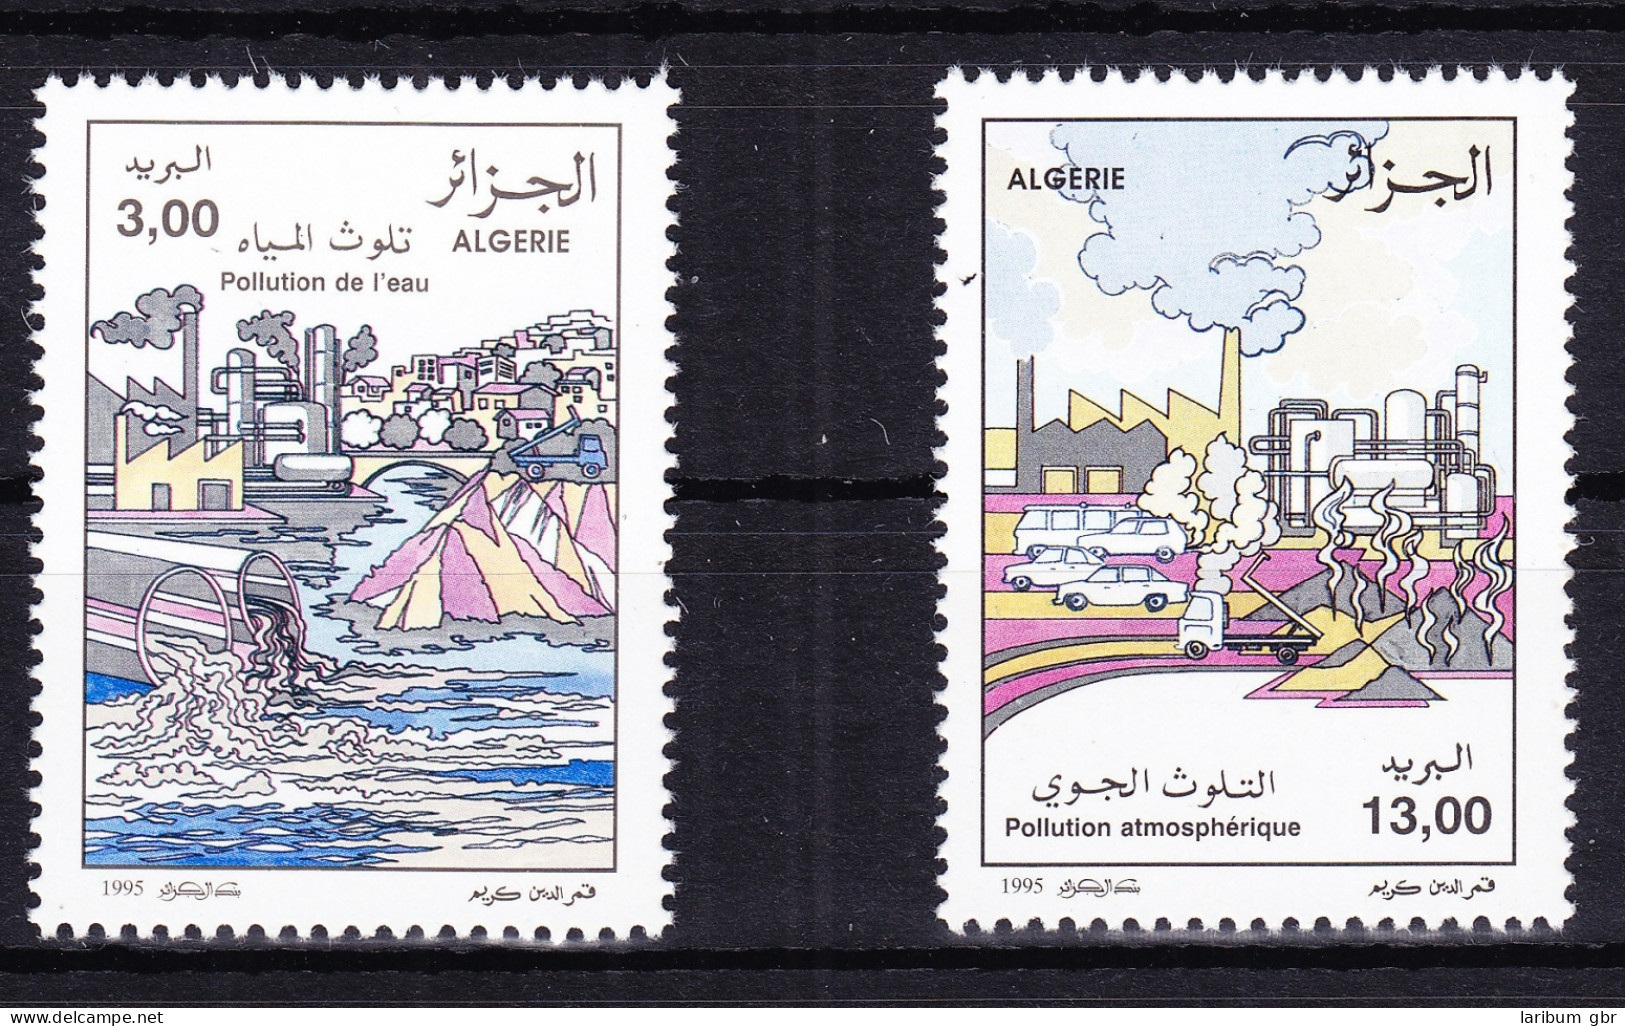 Algerien 1137-1138 Postfrisch Umweltschutz, MNH #RB799 - Algérie (1962-...)